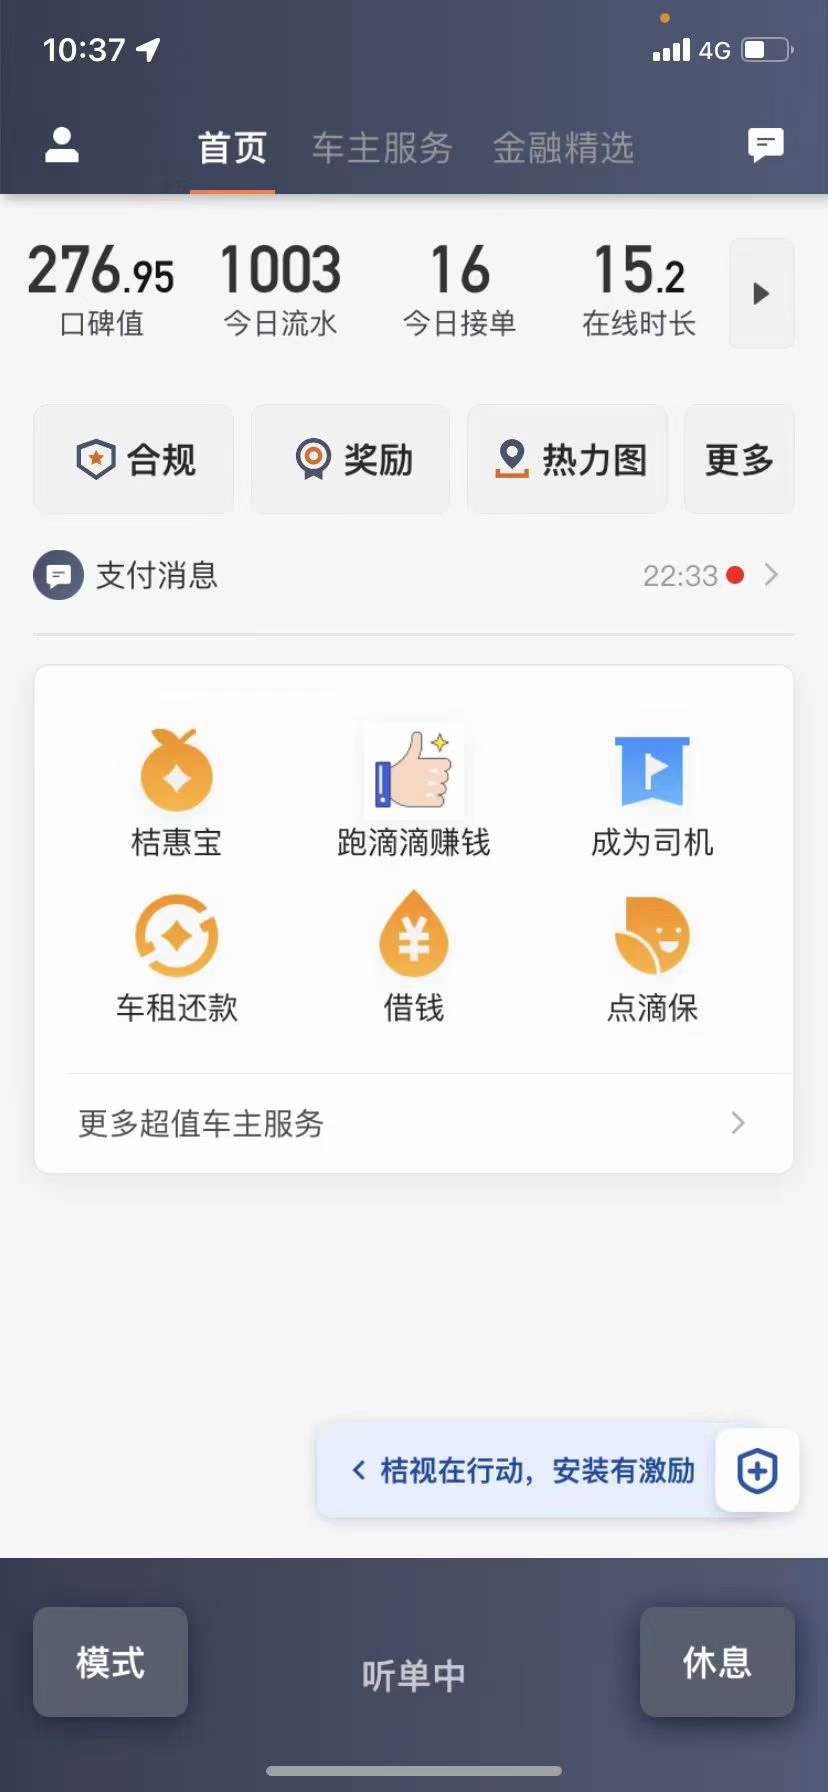 主变量上海租车牌照怎么区分上海网约车租赁靠谱公司新闻热点